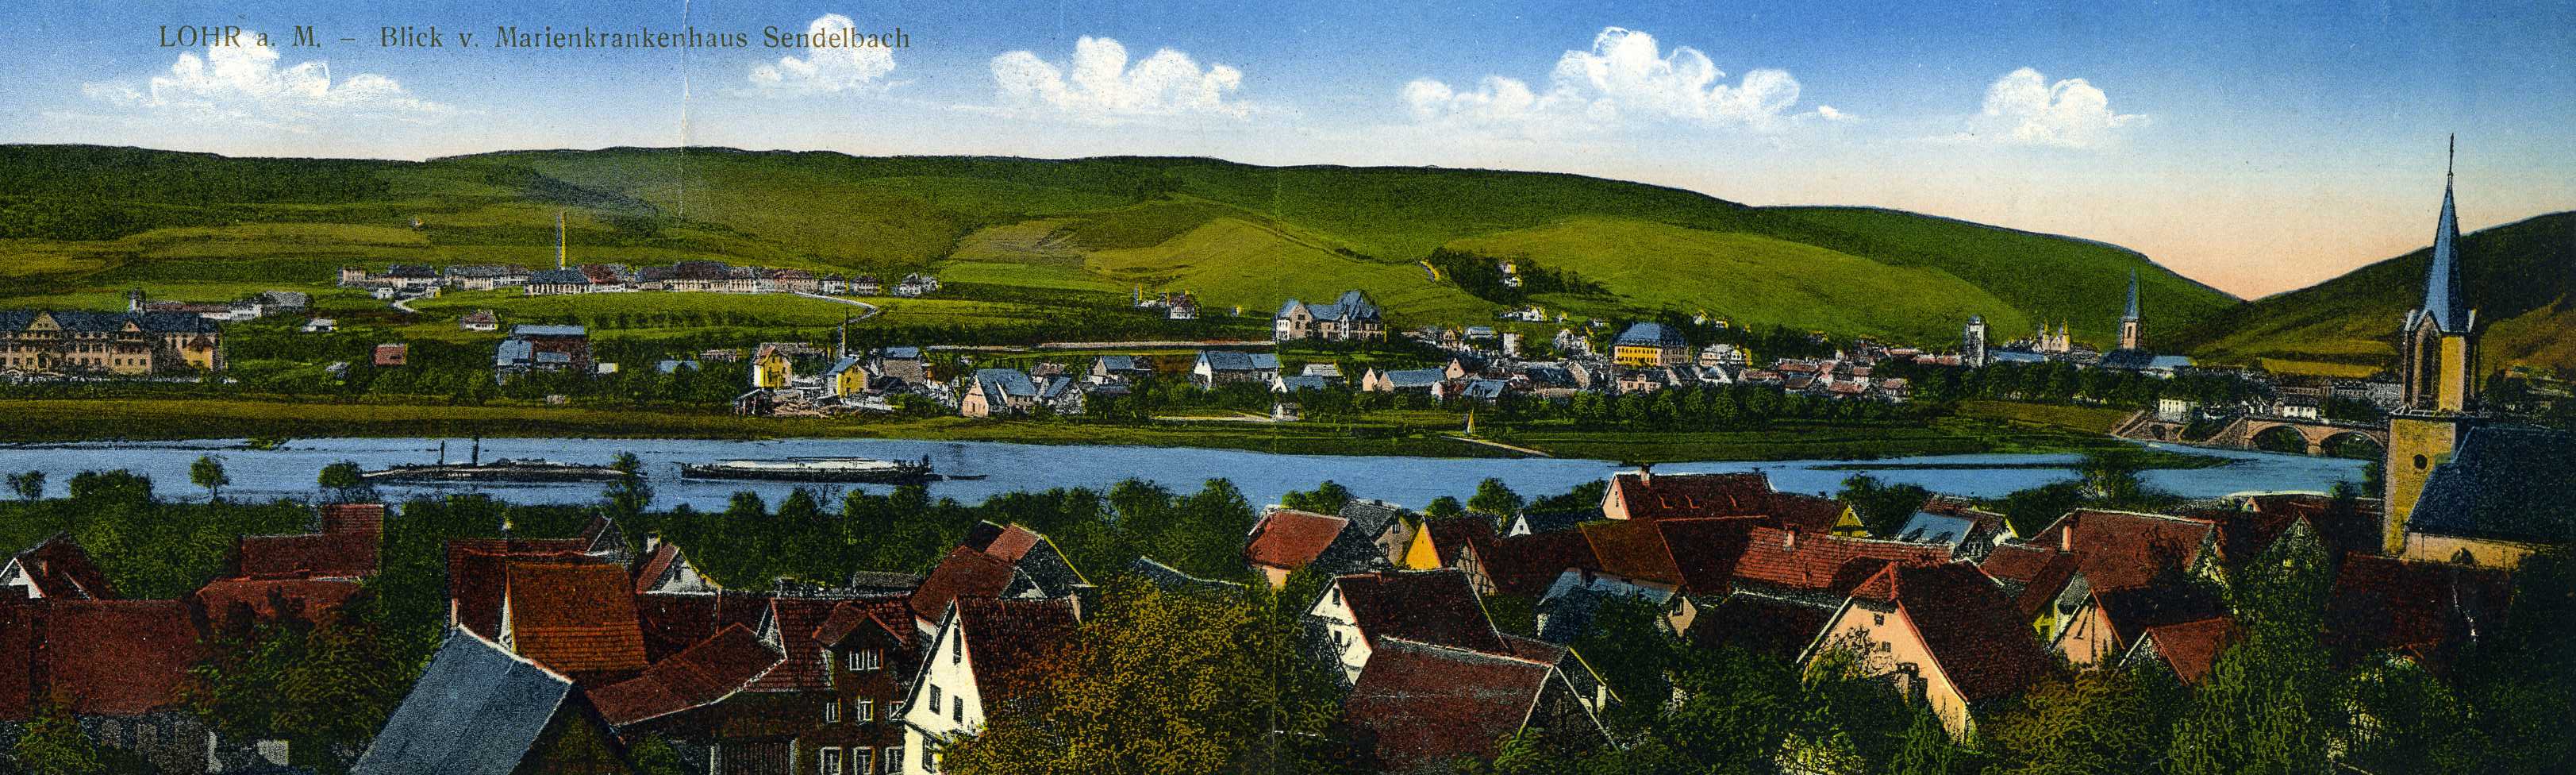 „LOHR a. M. - Blick v. Marienkrankenhaus Sendelbach“, kolorierte Panorama-Postkarte, um 1914; das linke Schiff auf dem Main ist eine talwrts fahrende „Meekuh“